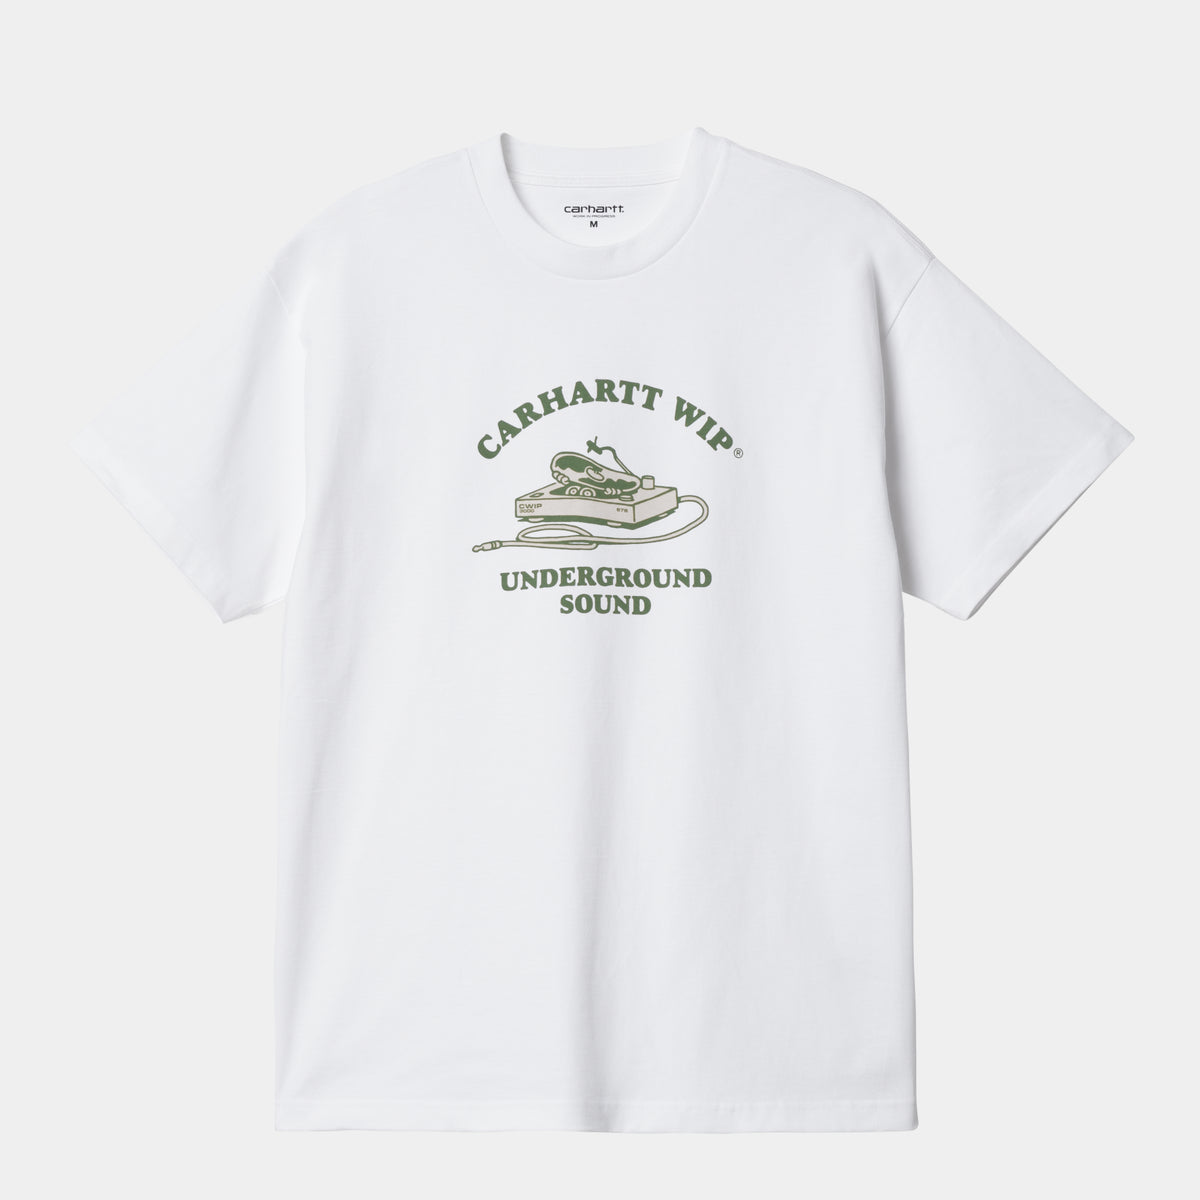 Carhartt Underground Sound S/S T-Shirt